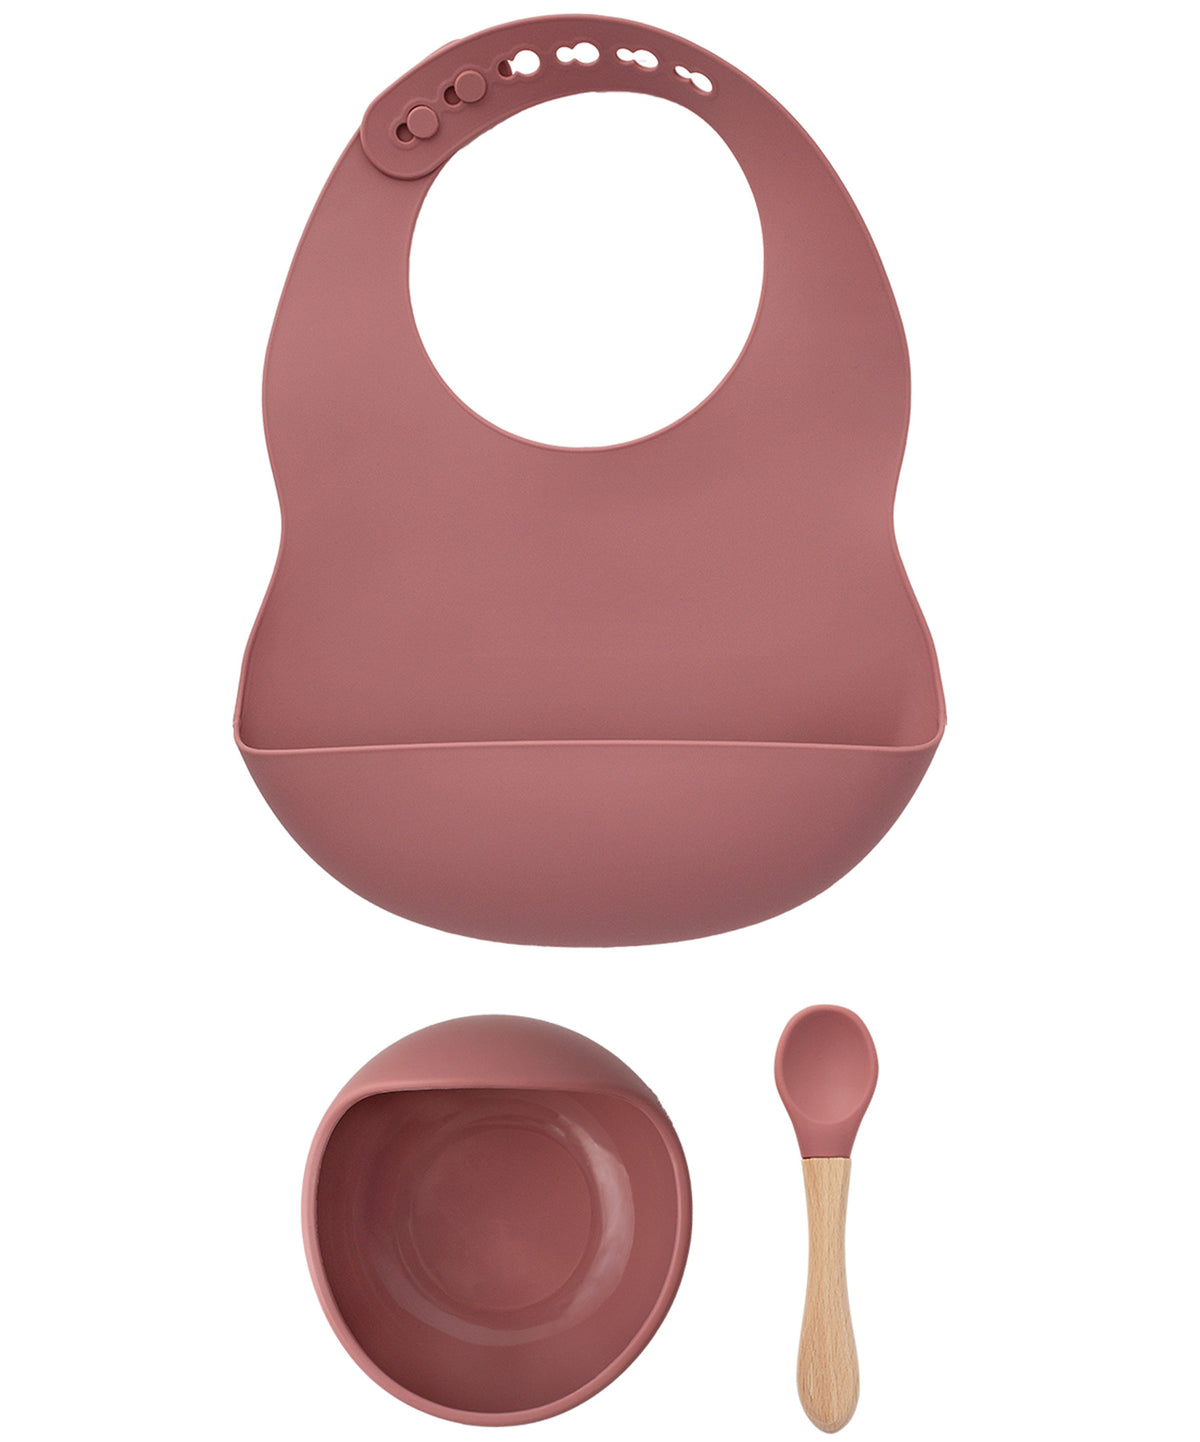 Milk It Baby Rose Pink Bib & Bowl Set, 100% Food Grade Silicone Set, MI-BBRP004